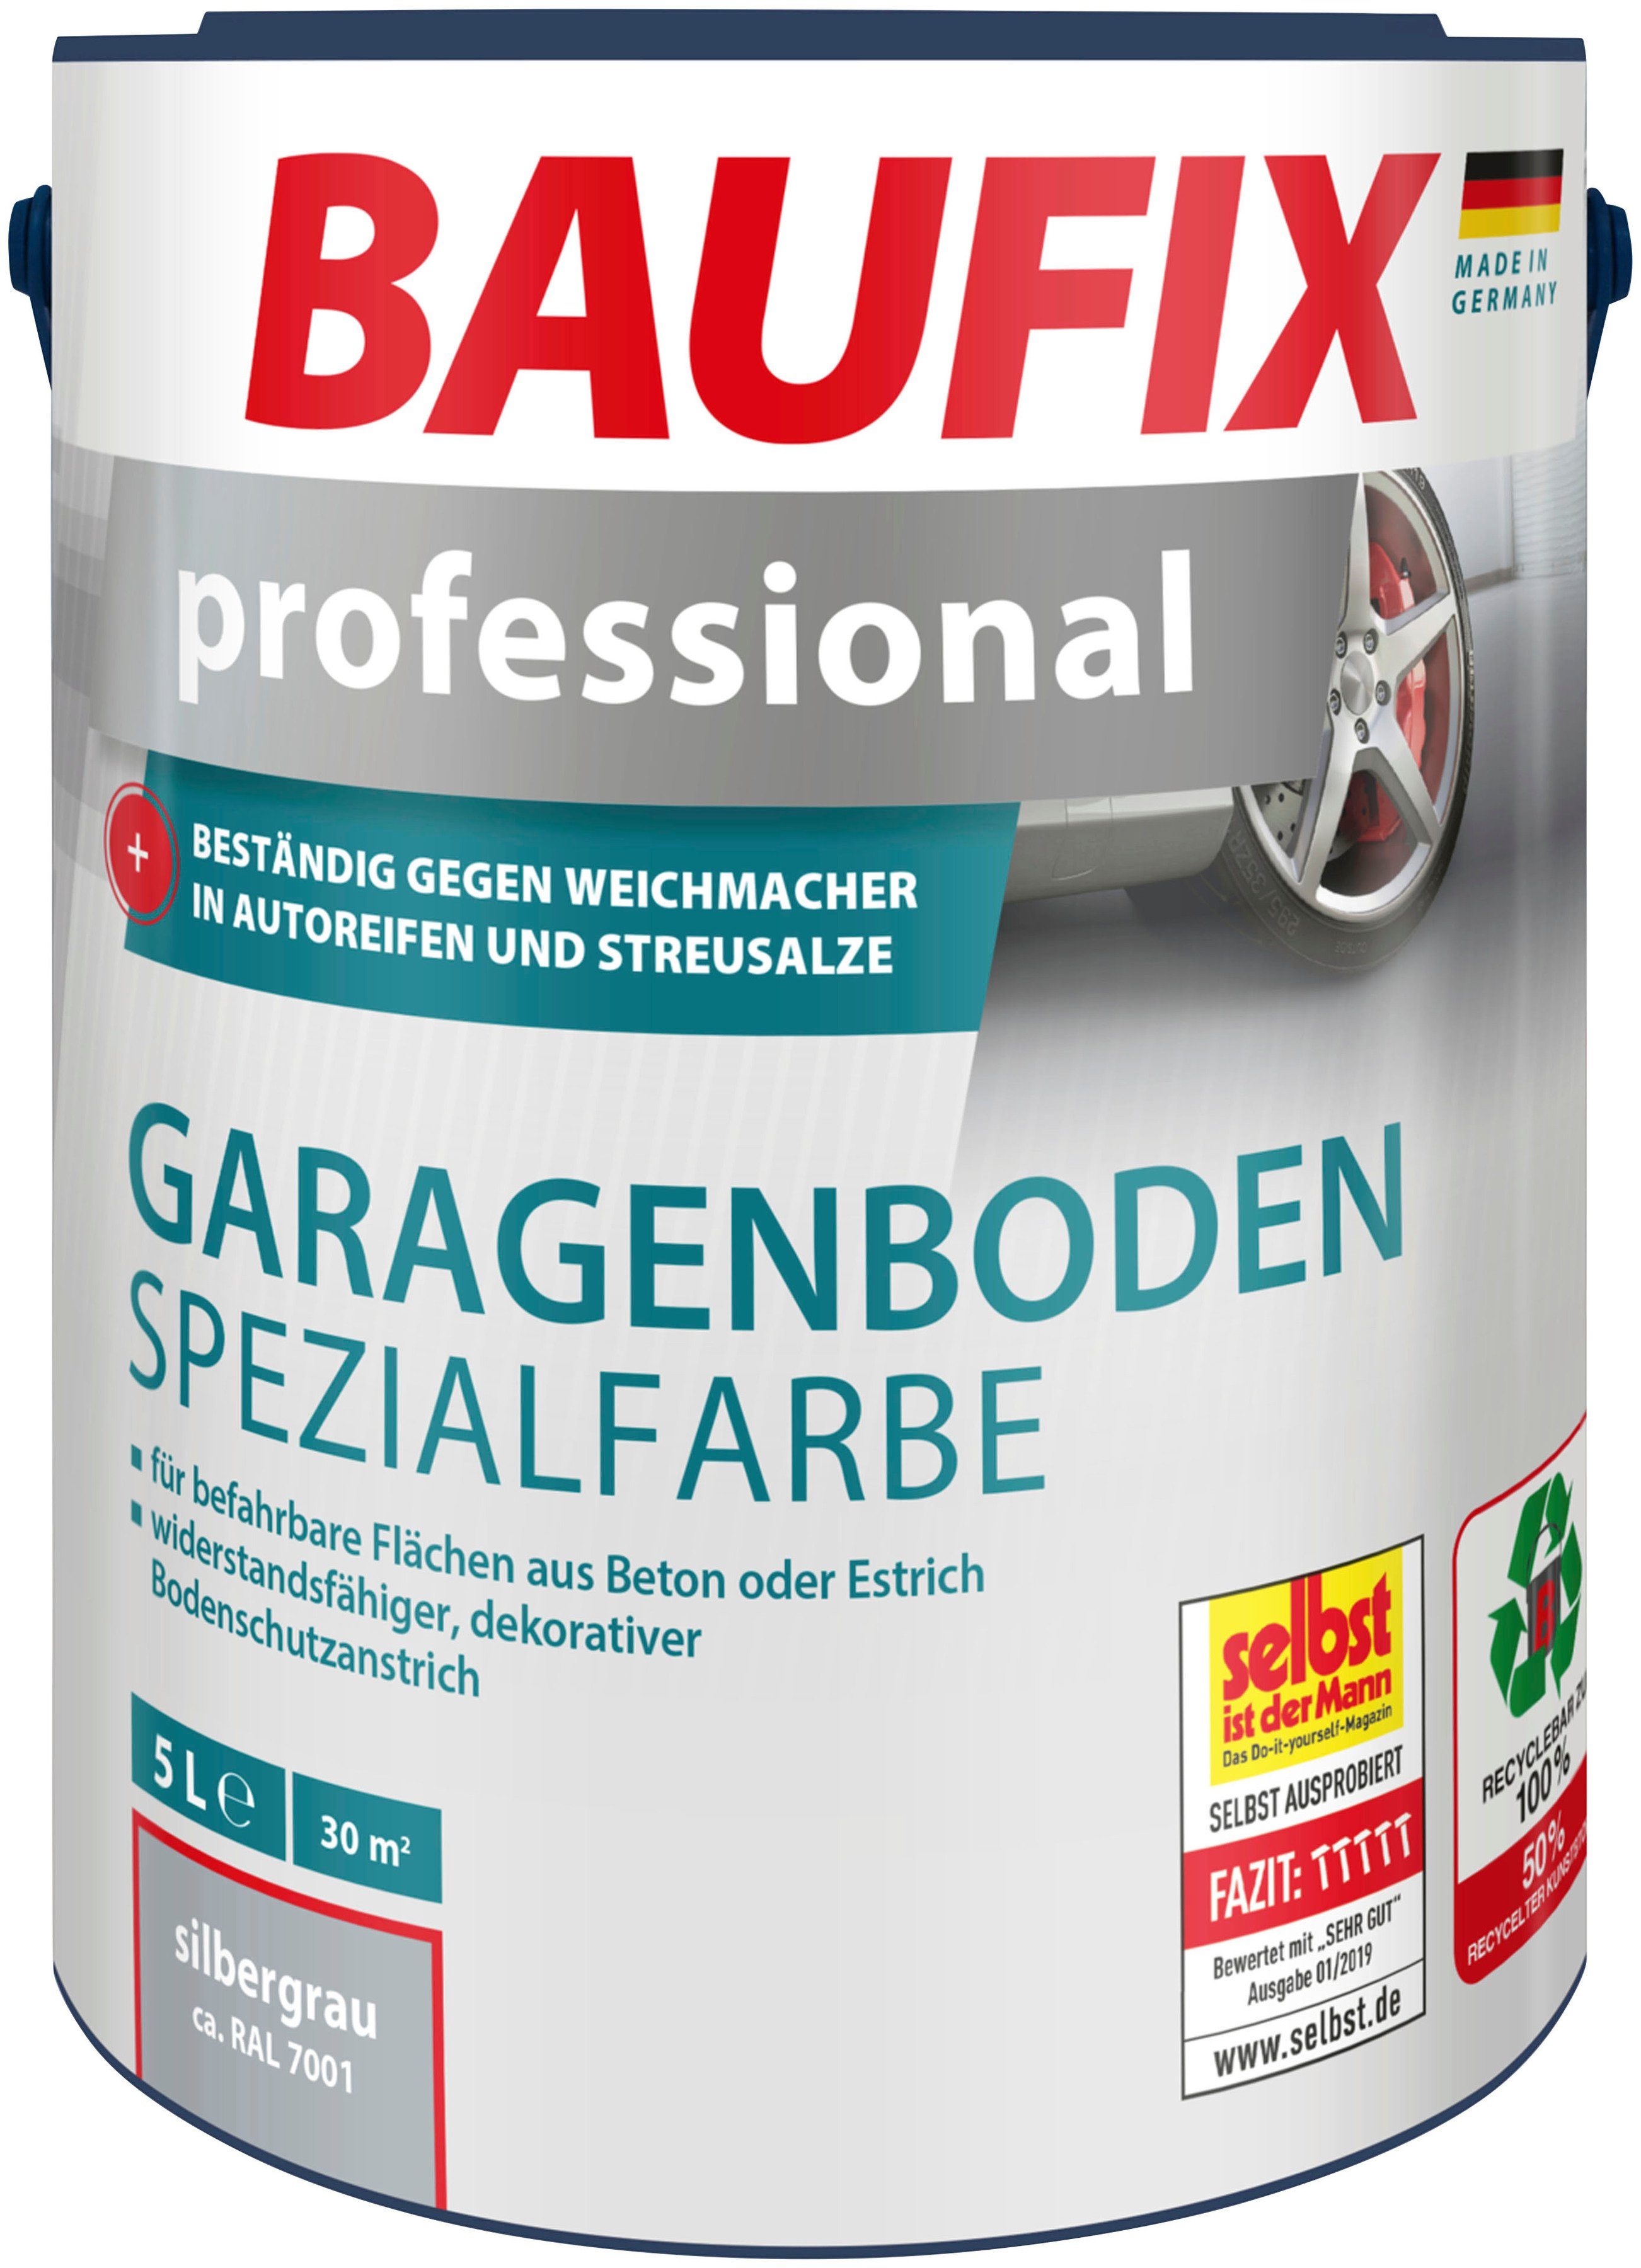 Baufix Acryl-Flüssigkunststoff professional Garagenboden Spezialfarbe, wasserbeständig, UV beständig, wetterbeständig, 5L, matt silbergrau